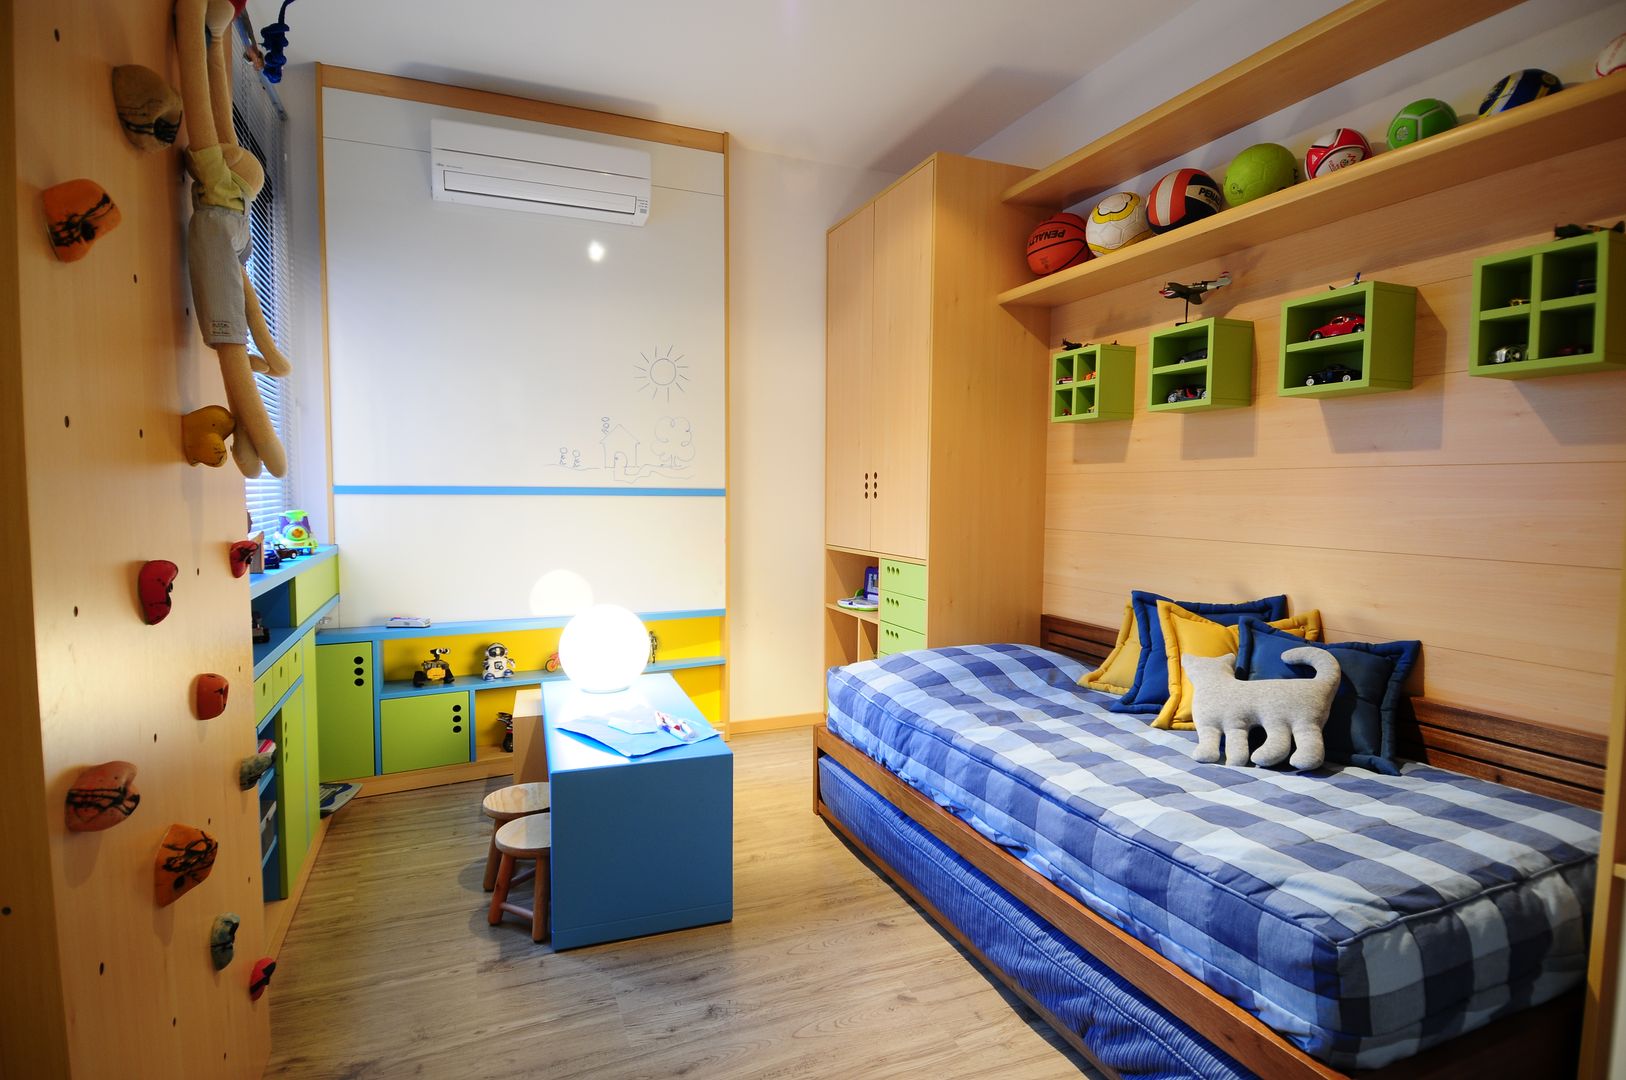 Apartamento Rio Branco., João Linck | Arquitetura João Linck | Arquitetura Nursery/kid’s room